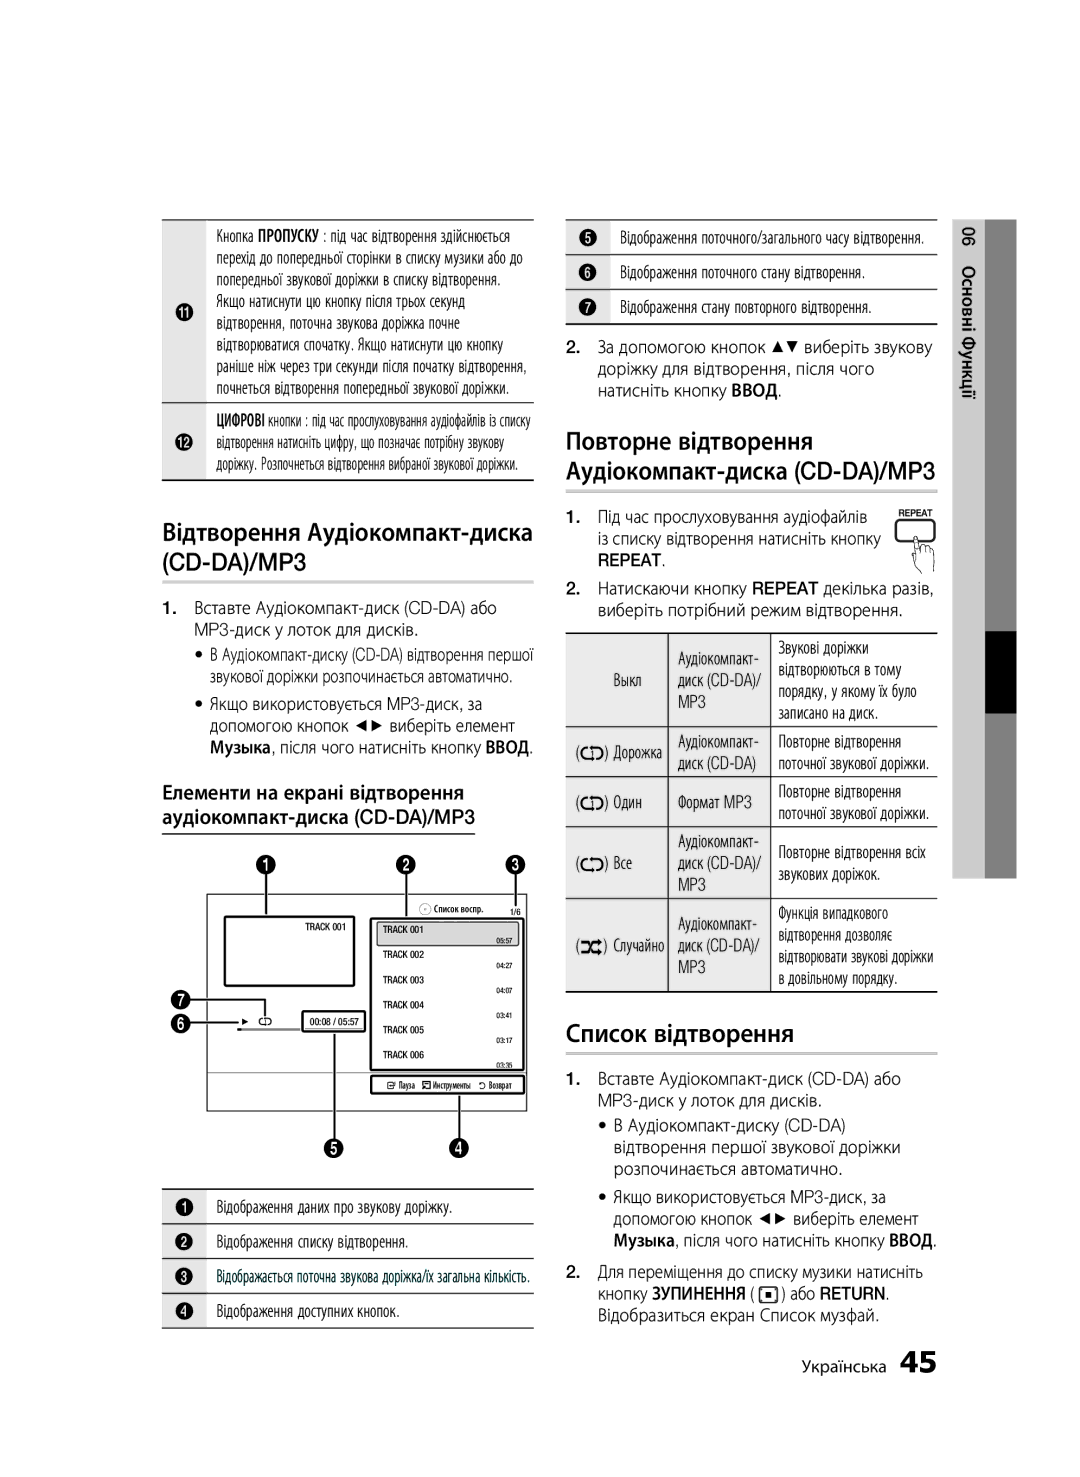 Samsung BD-C5500/XER manual Список відтворення, Елементи на екрані відтворення Аудіокомпакт-диска CD-DA/MP3, Repeat 